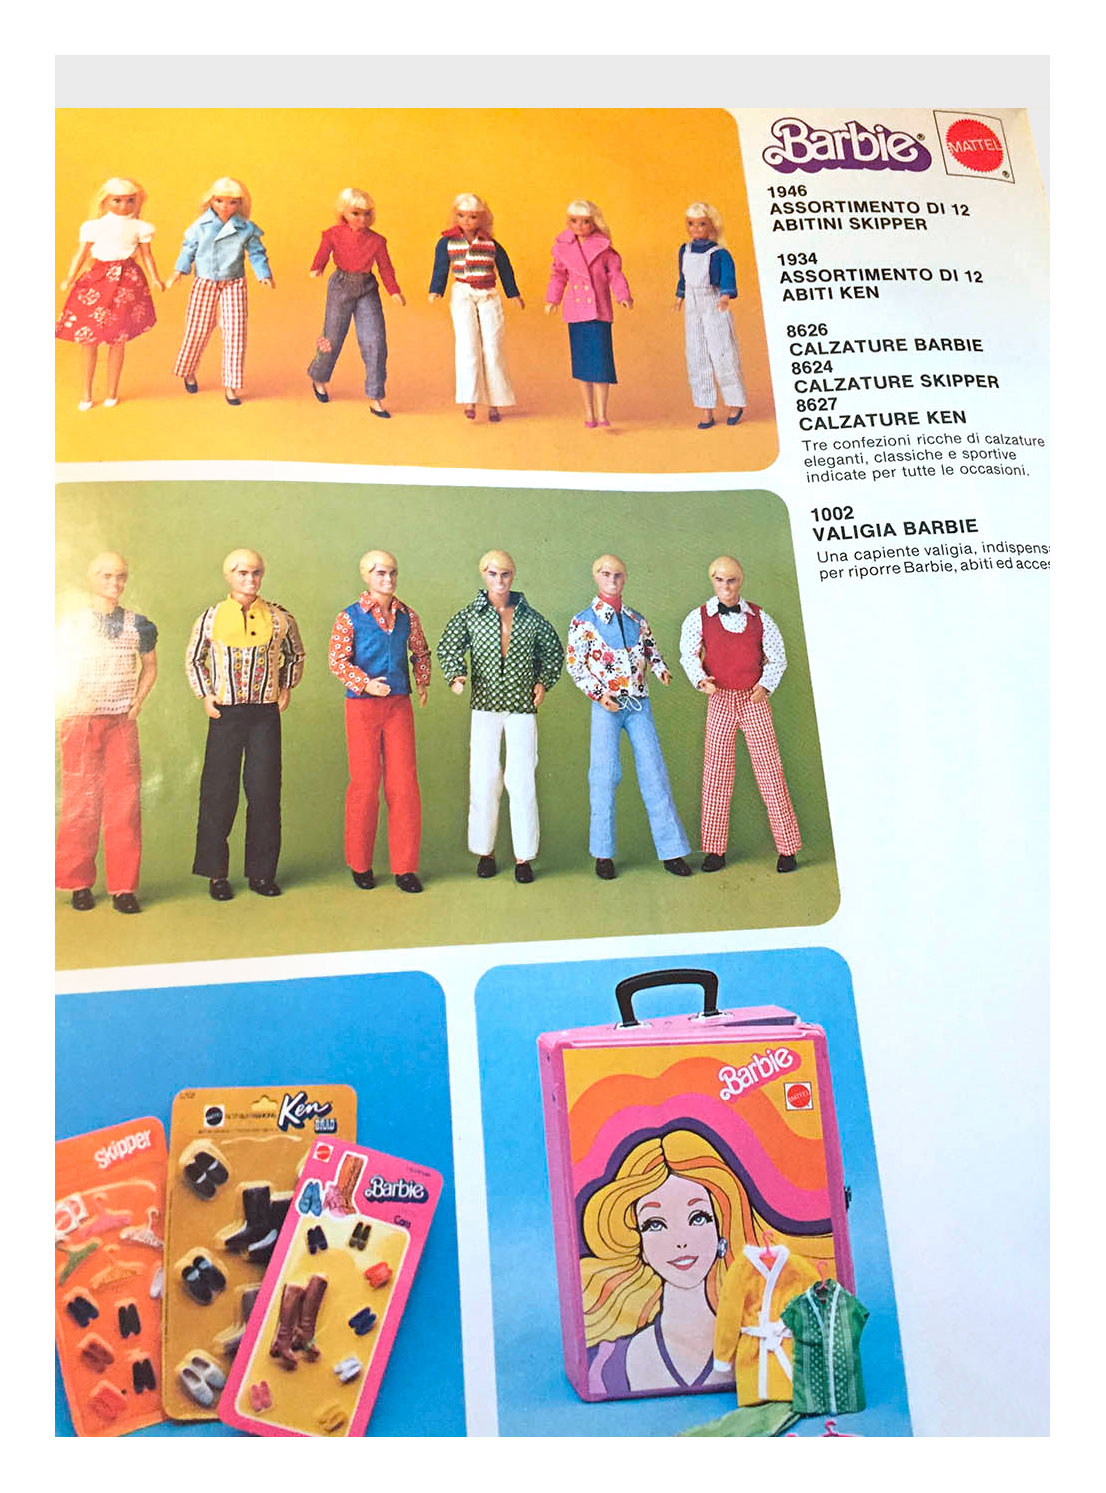 From Italian Mattel Giocattoli 1981 catalogue